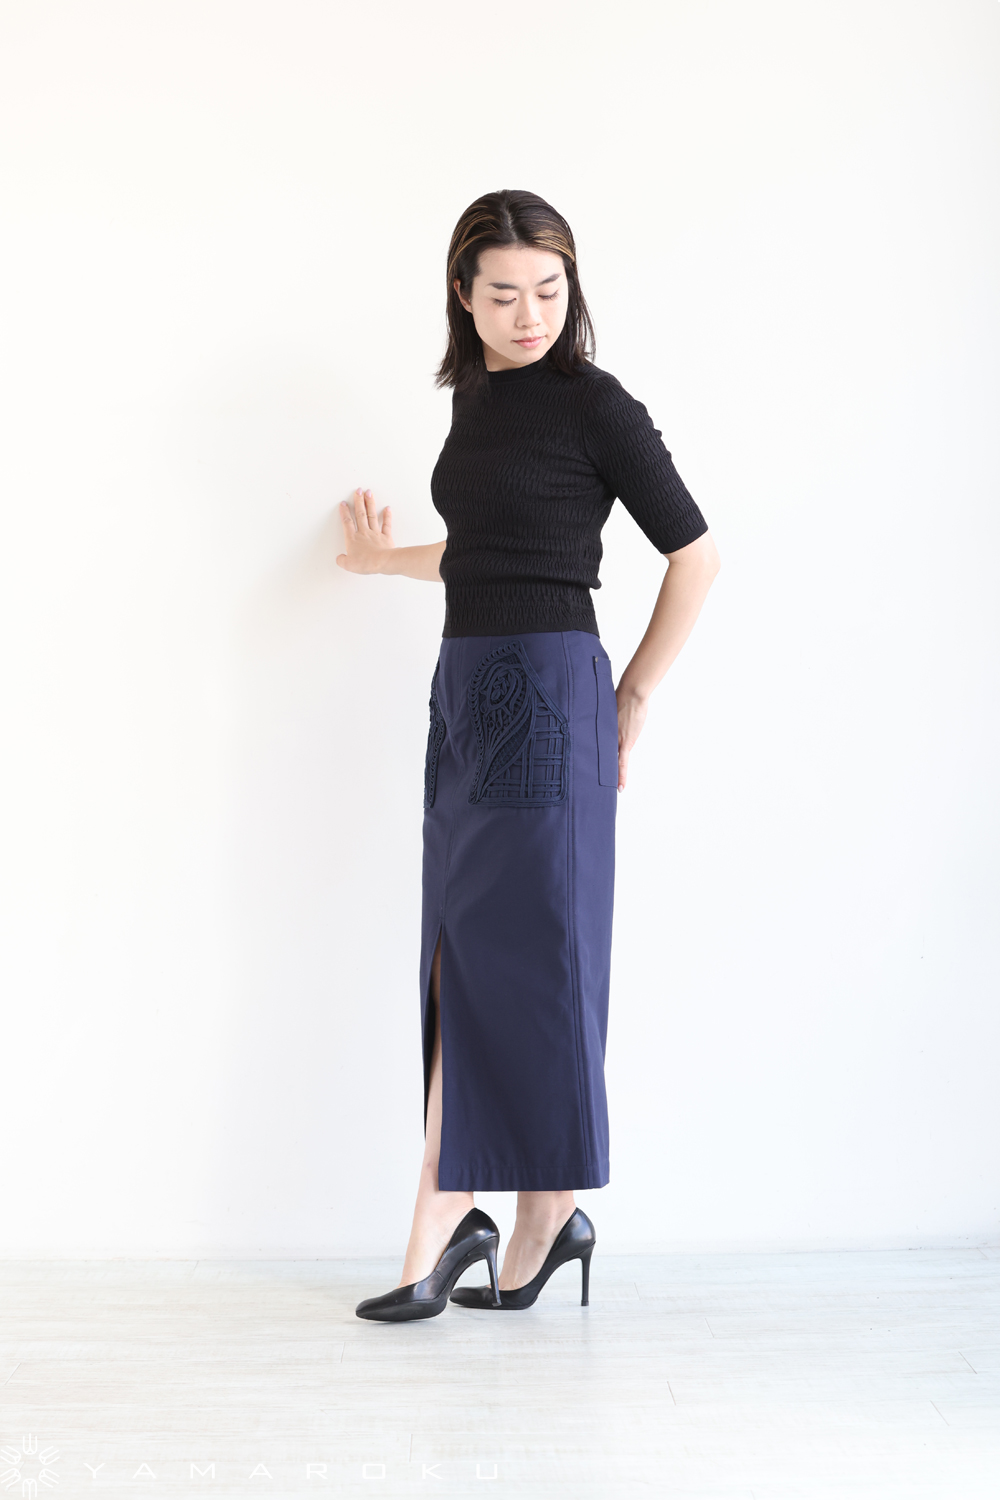 Mame Kurogouchi(マメ) Cording Embroidered Nep-Cotton Skirt 